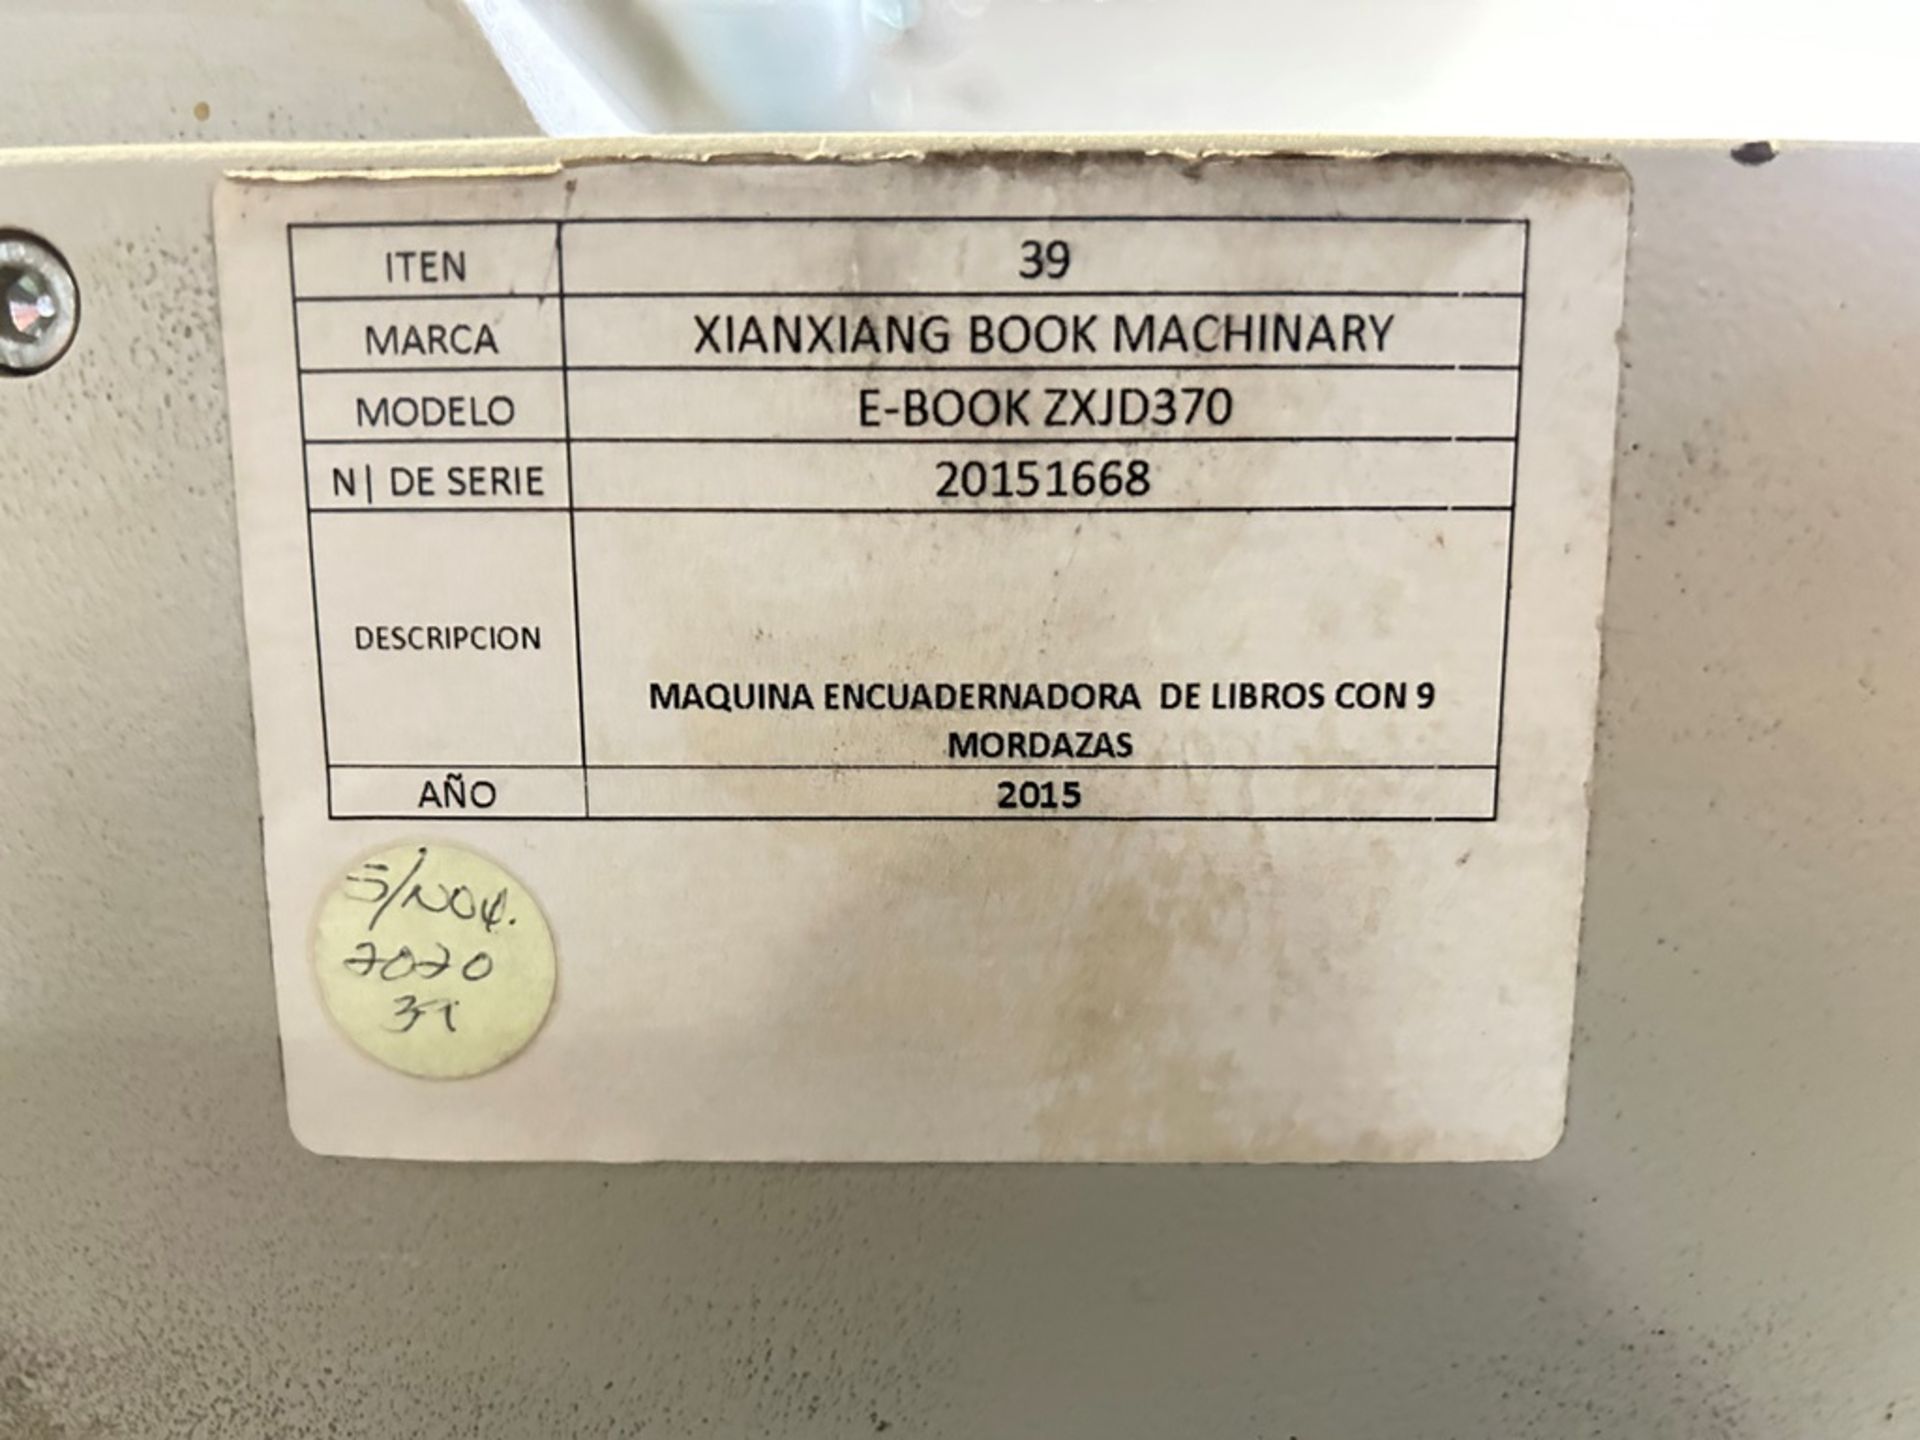 Maquina encuadernadora de libros con 9 mordazas Marca XINXIANG BOX MACHINARY, Modelo E-BOOK ZXJD370 - Image 12 of 13